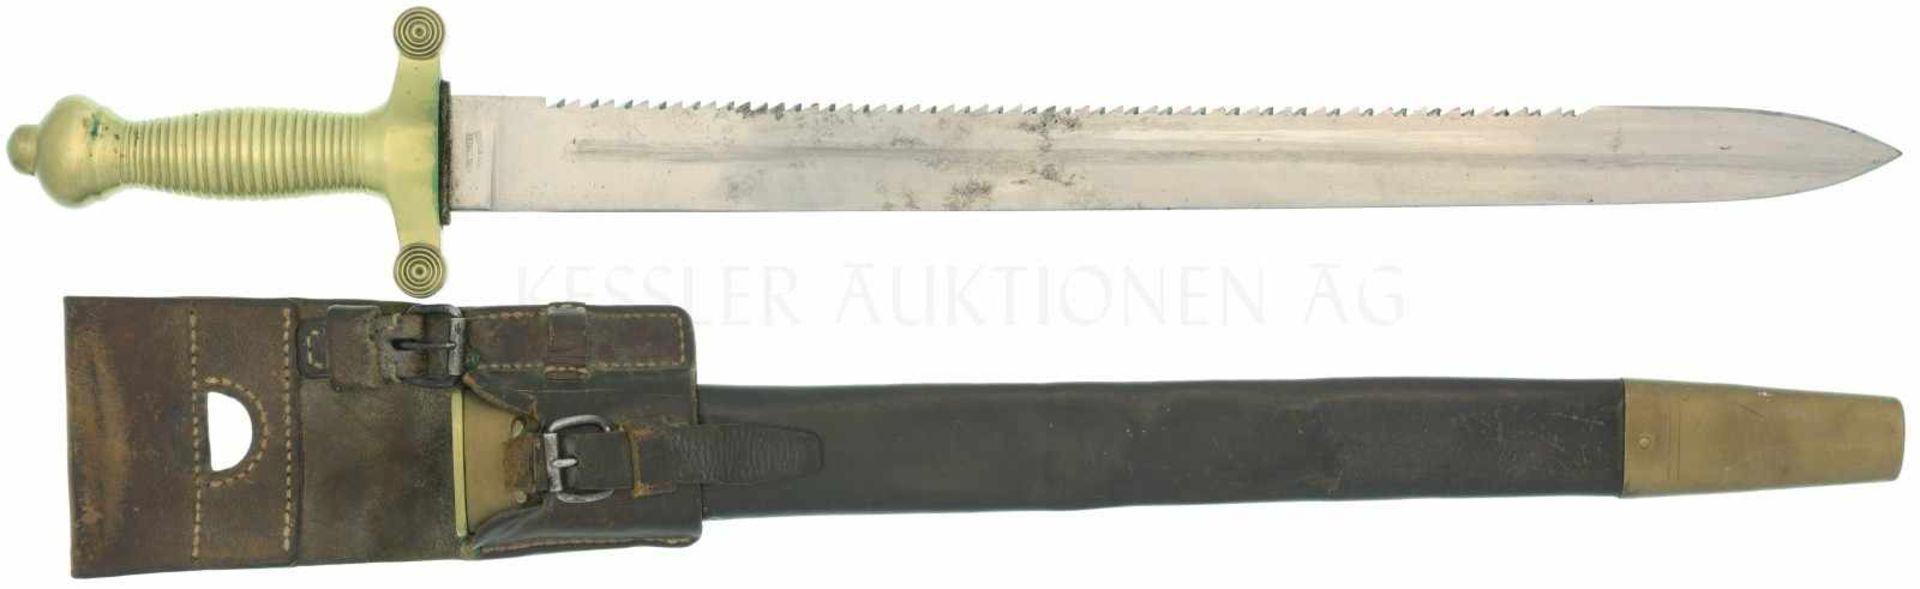 Faschinenmesser 1852 Messinggefäss mit 26 Rillen, Parierstange mit 4 Rillen. KL 520mm, TL 670mm,